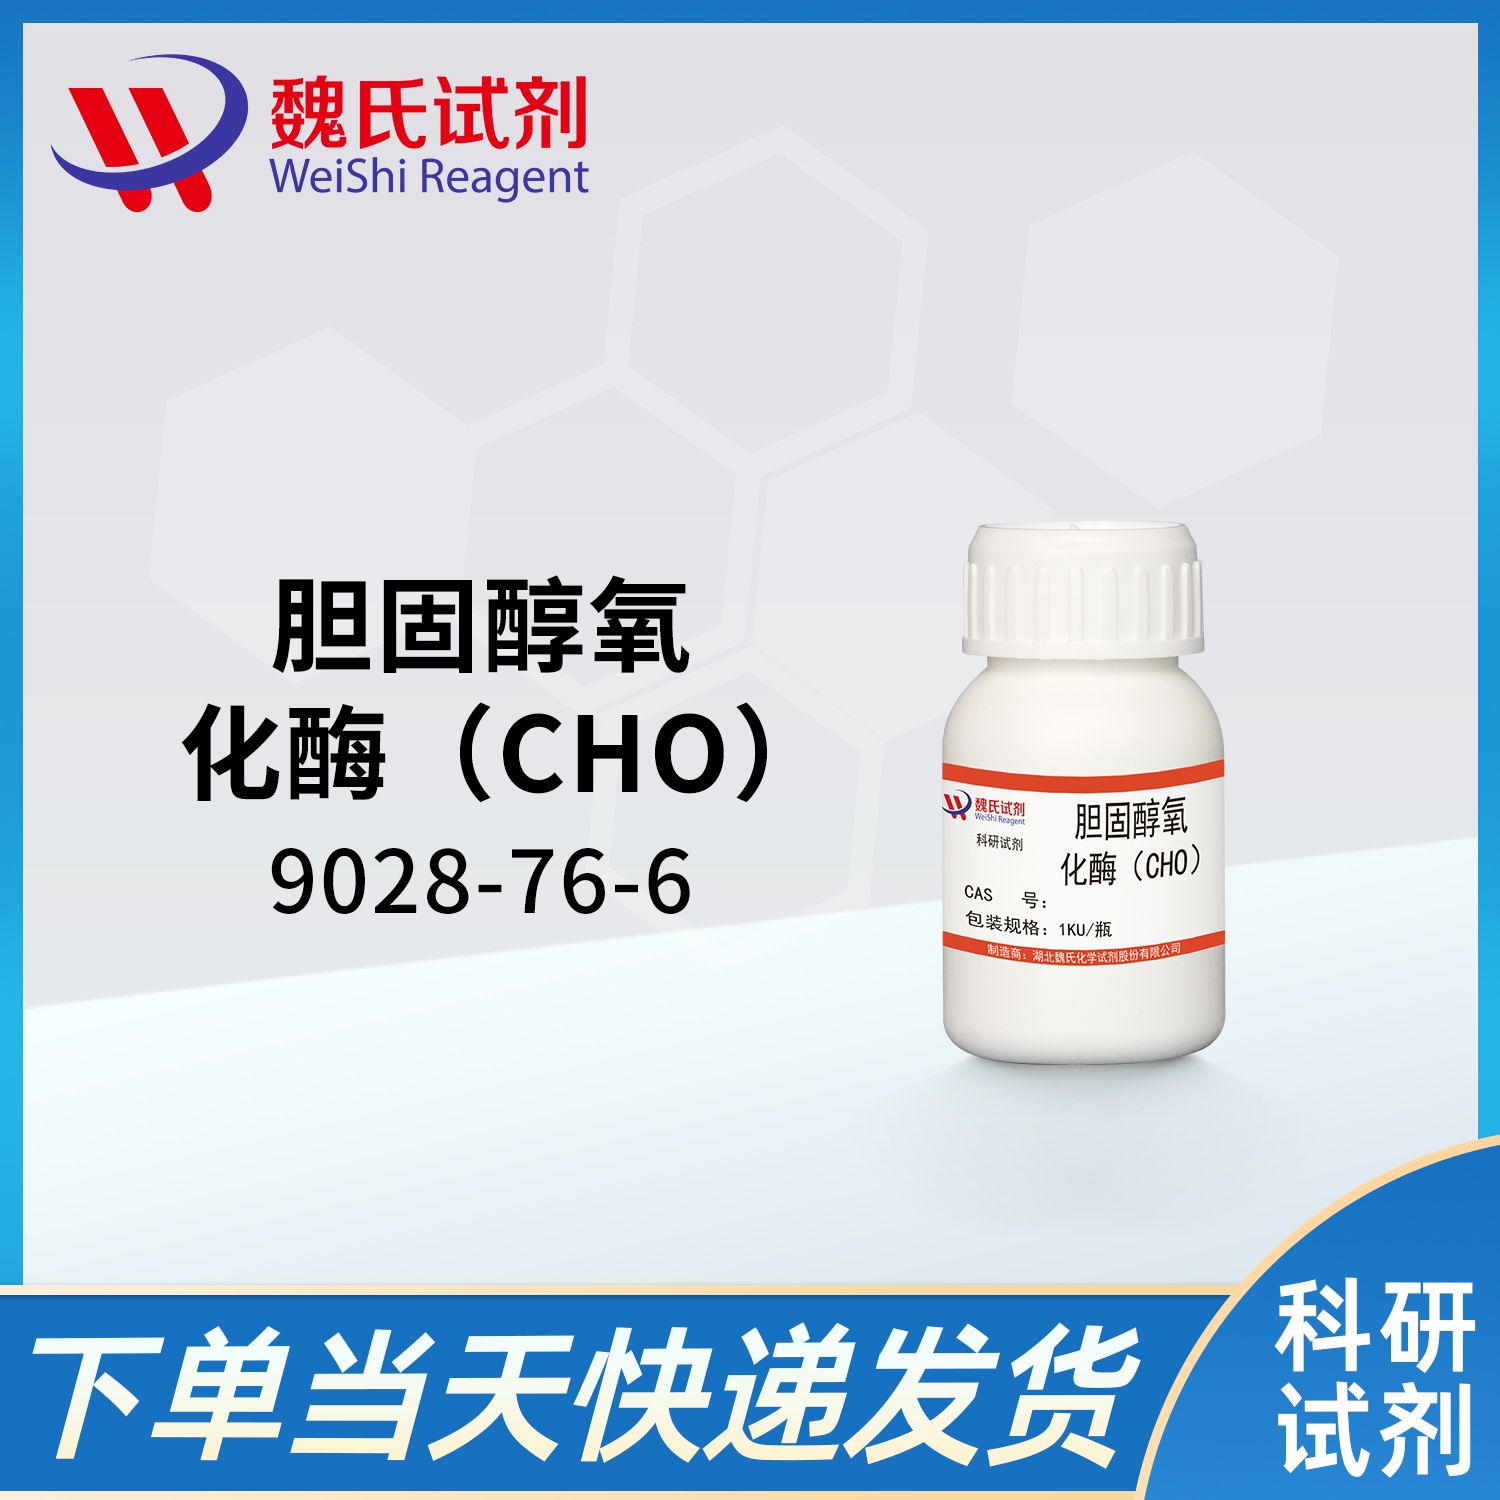 9028-76-6/胆固醇氧化酶（CHO）/CHOLESTEROL OXIDASE